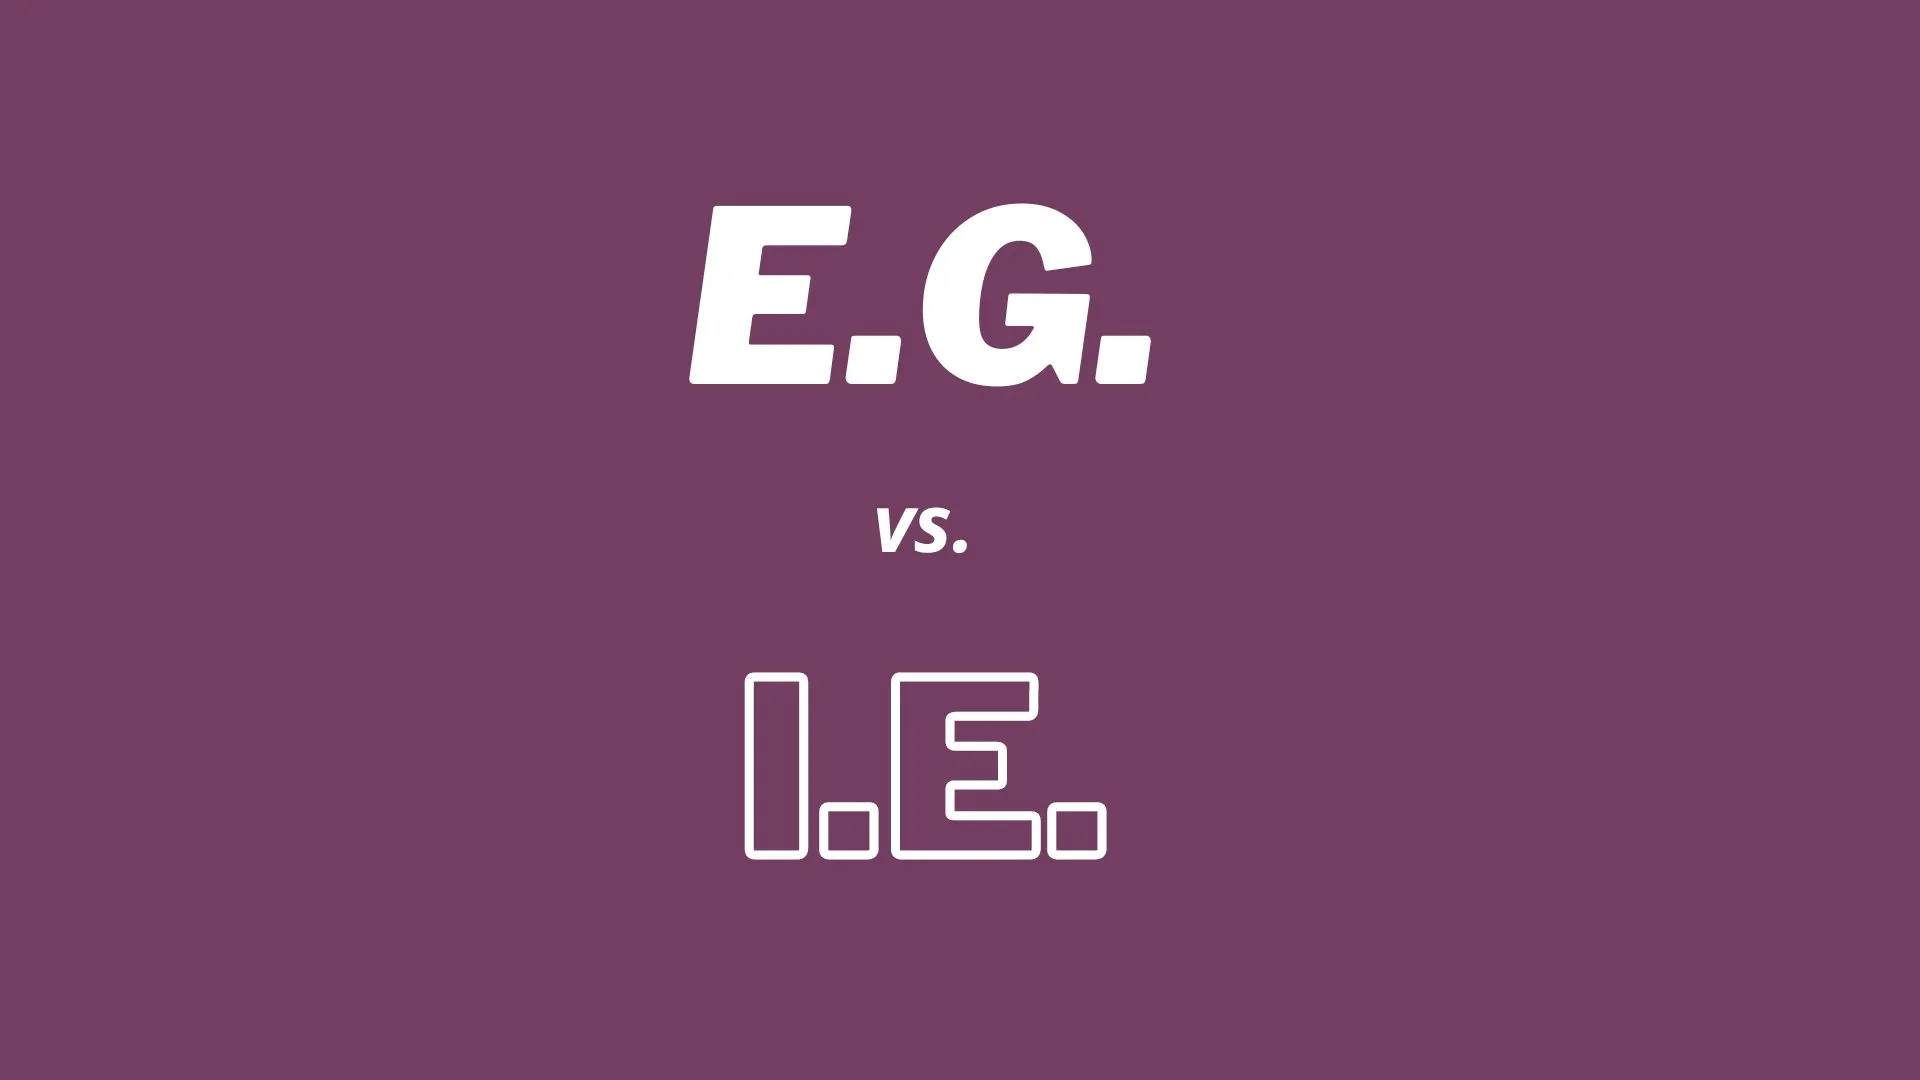 Ilustração mostrando a diferença entre "i.e." e "e.g." em abreviações latinas e seus significados em inglês para professores e alunos de inglês.